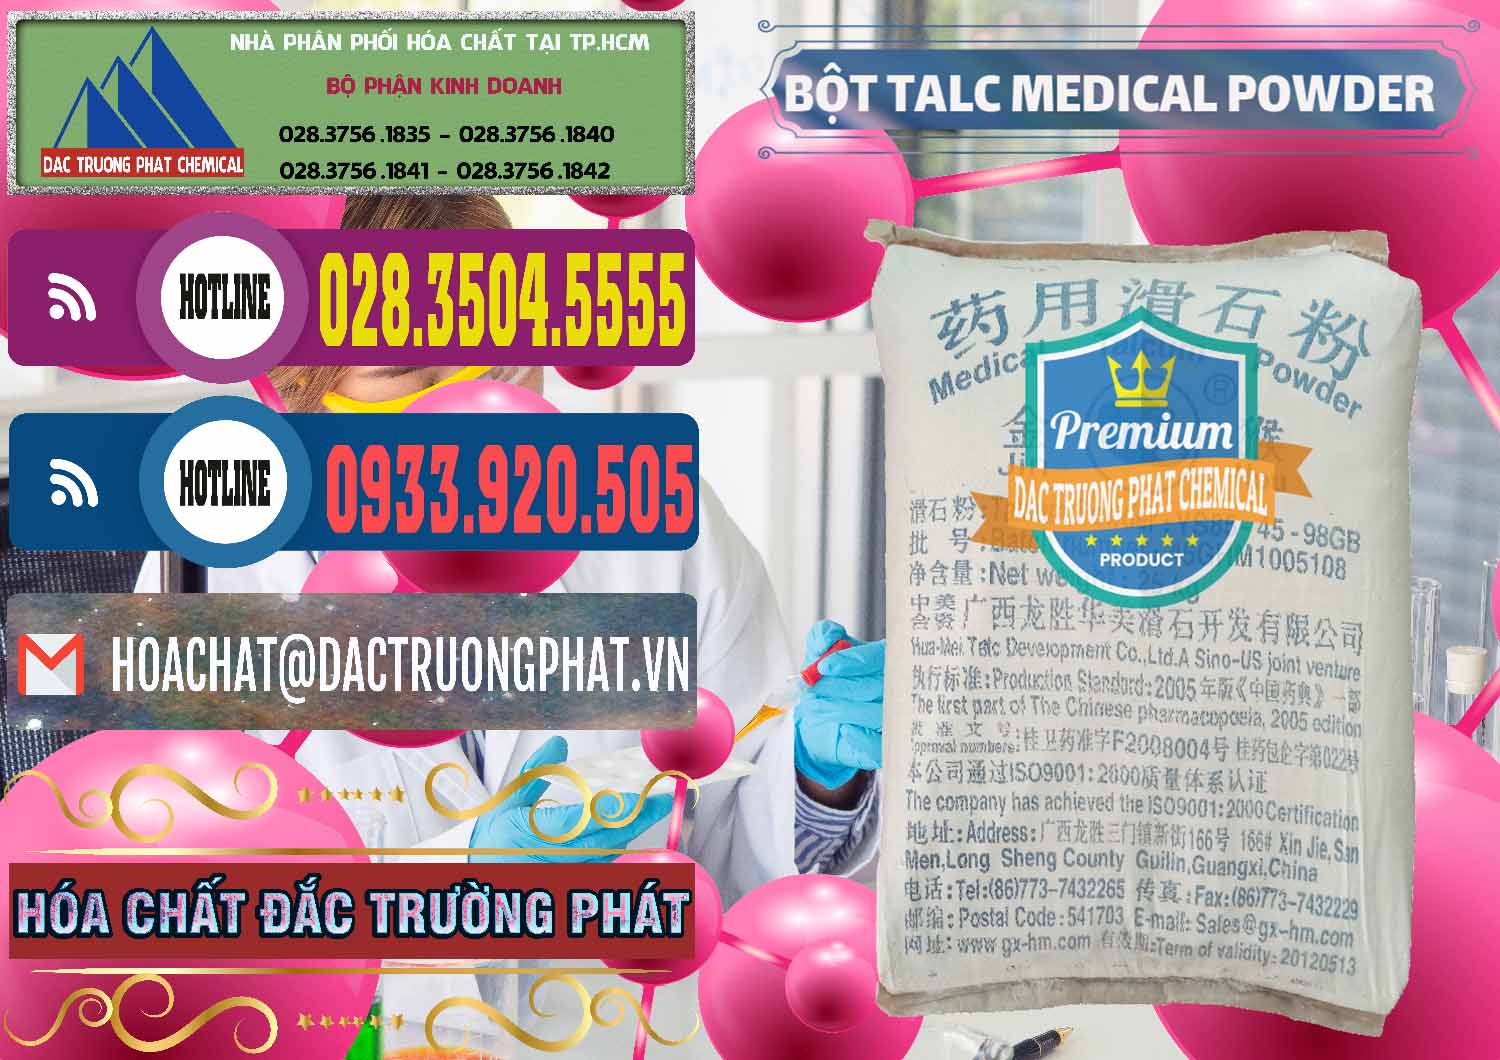 Công ty bán - phân phối Bột Talc Medical Powder Trung Quốc China - 0036 - Công ty chuyên phân phối - bán hóa chất tại TP.HCM - muabanhoachat.com.vn